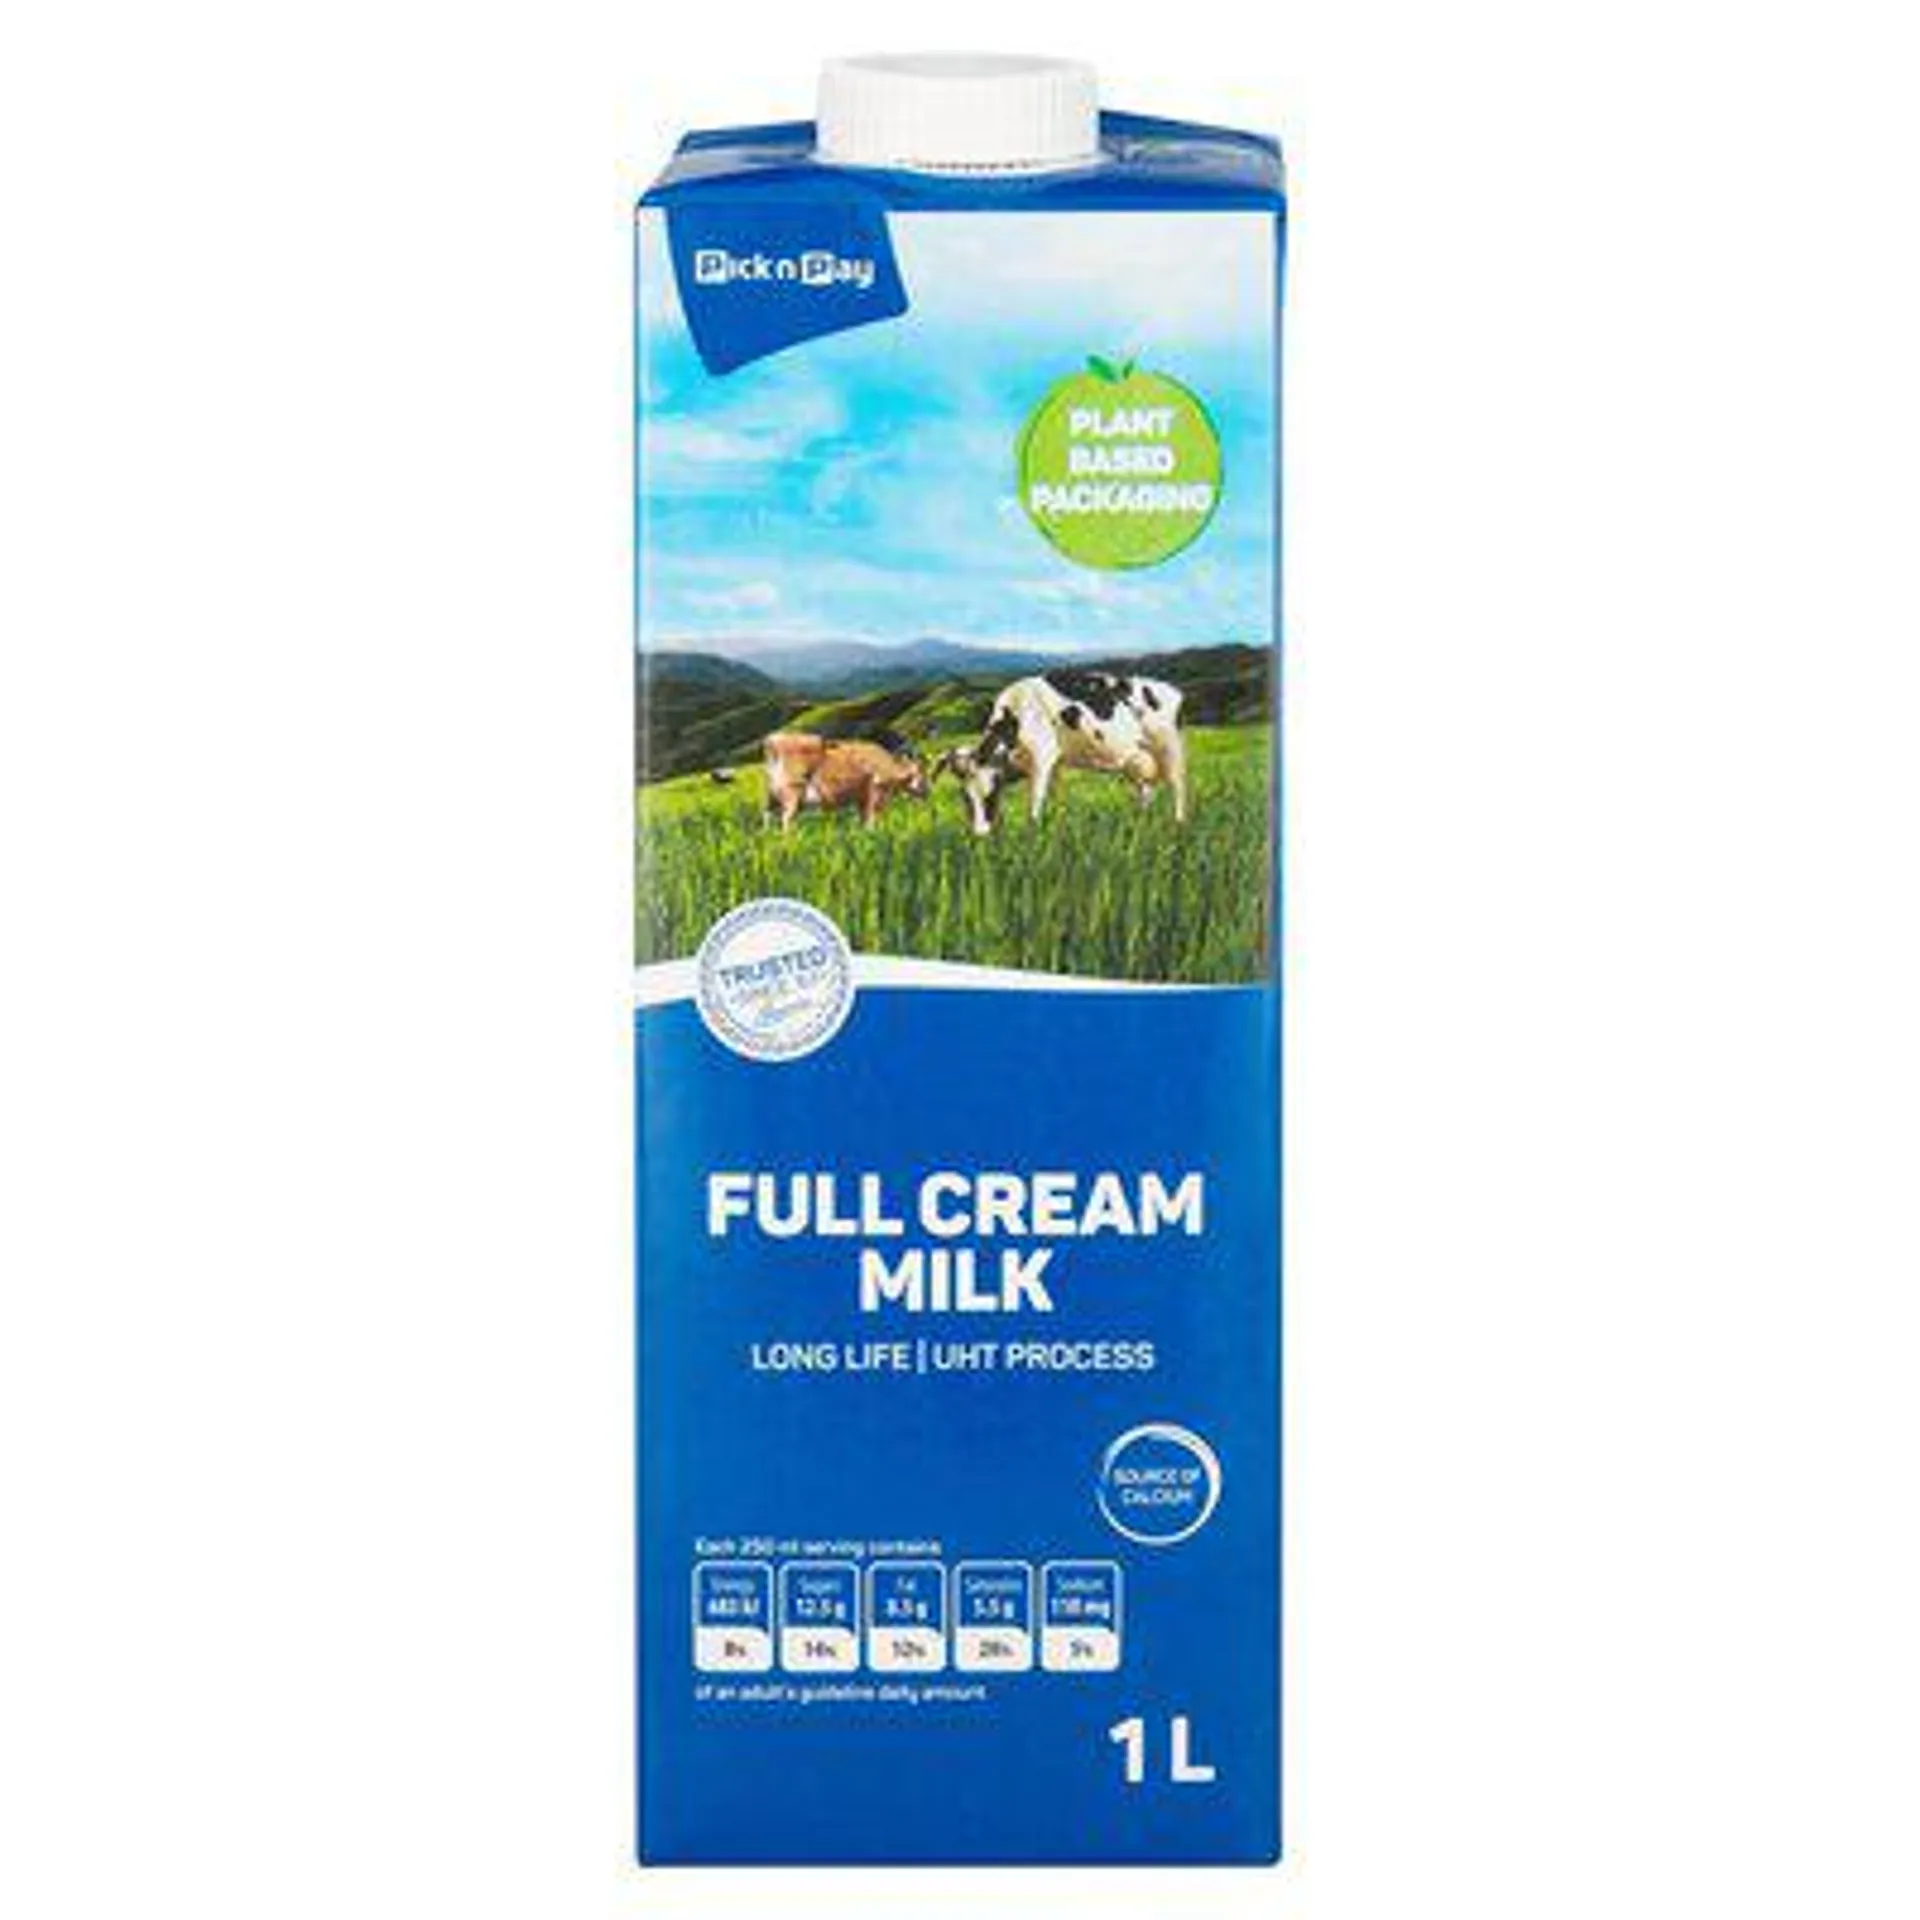 PnP Uht Full Cream Milk 1l